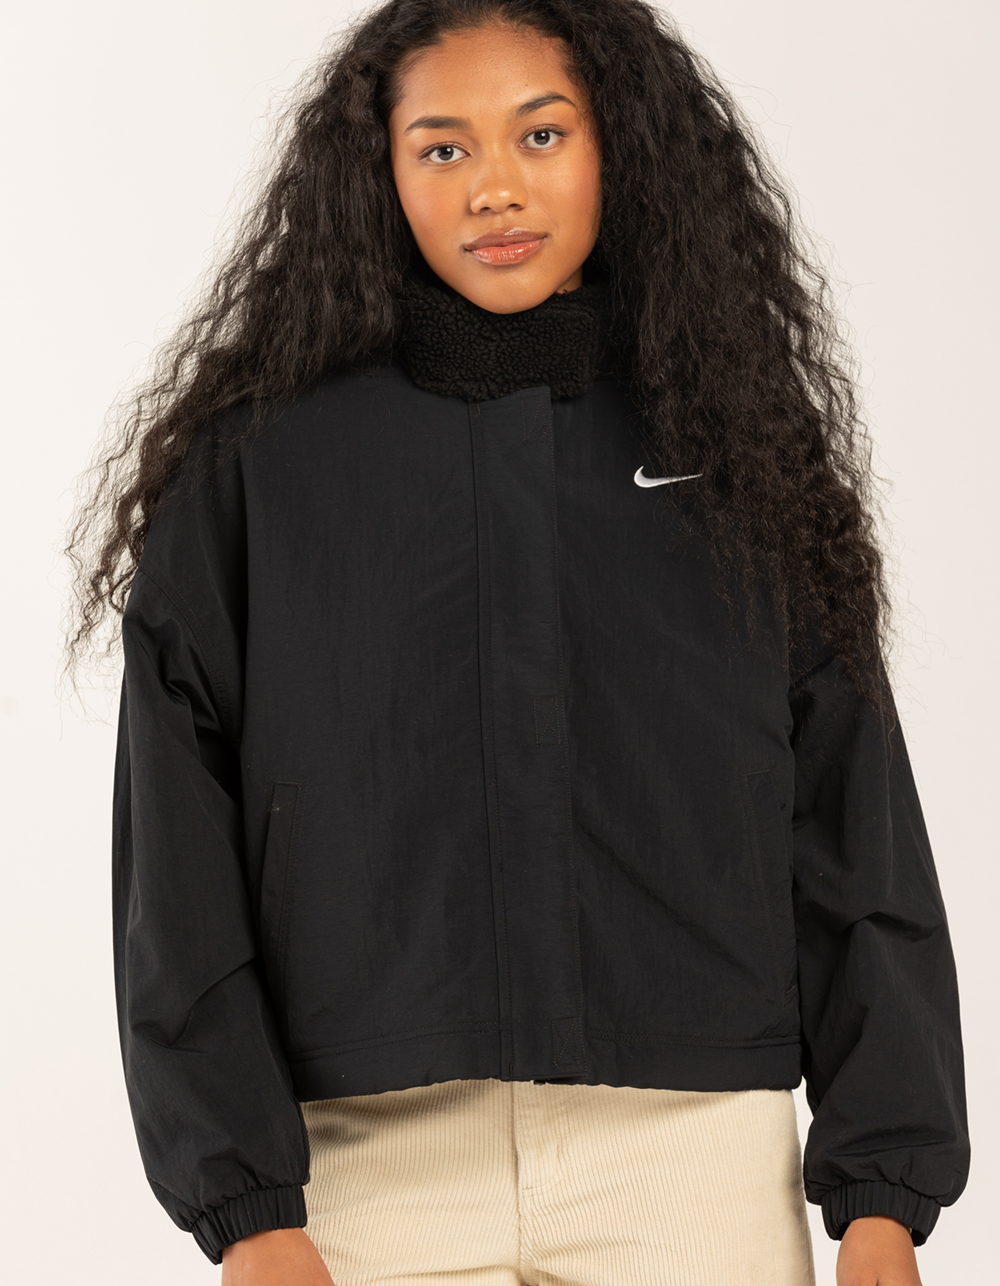 Women's Fleece Jackets. Nike IL